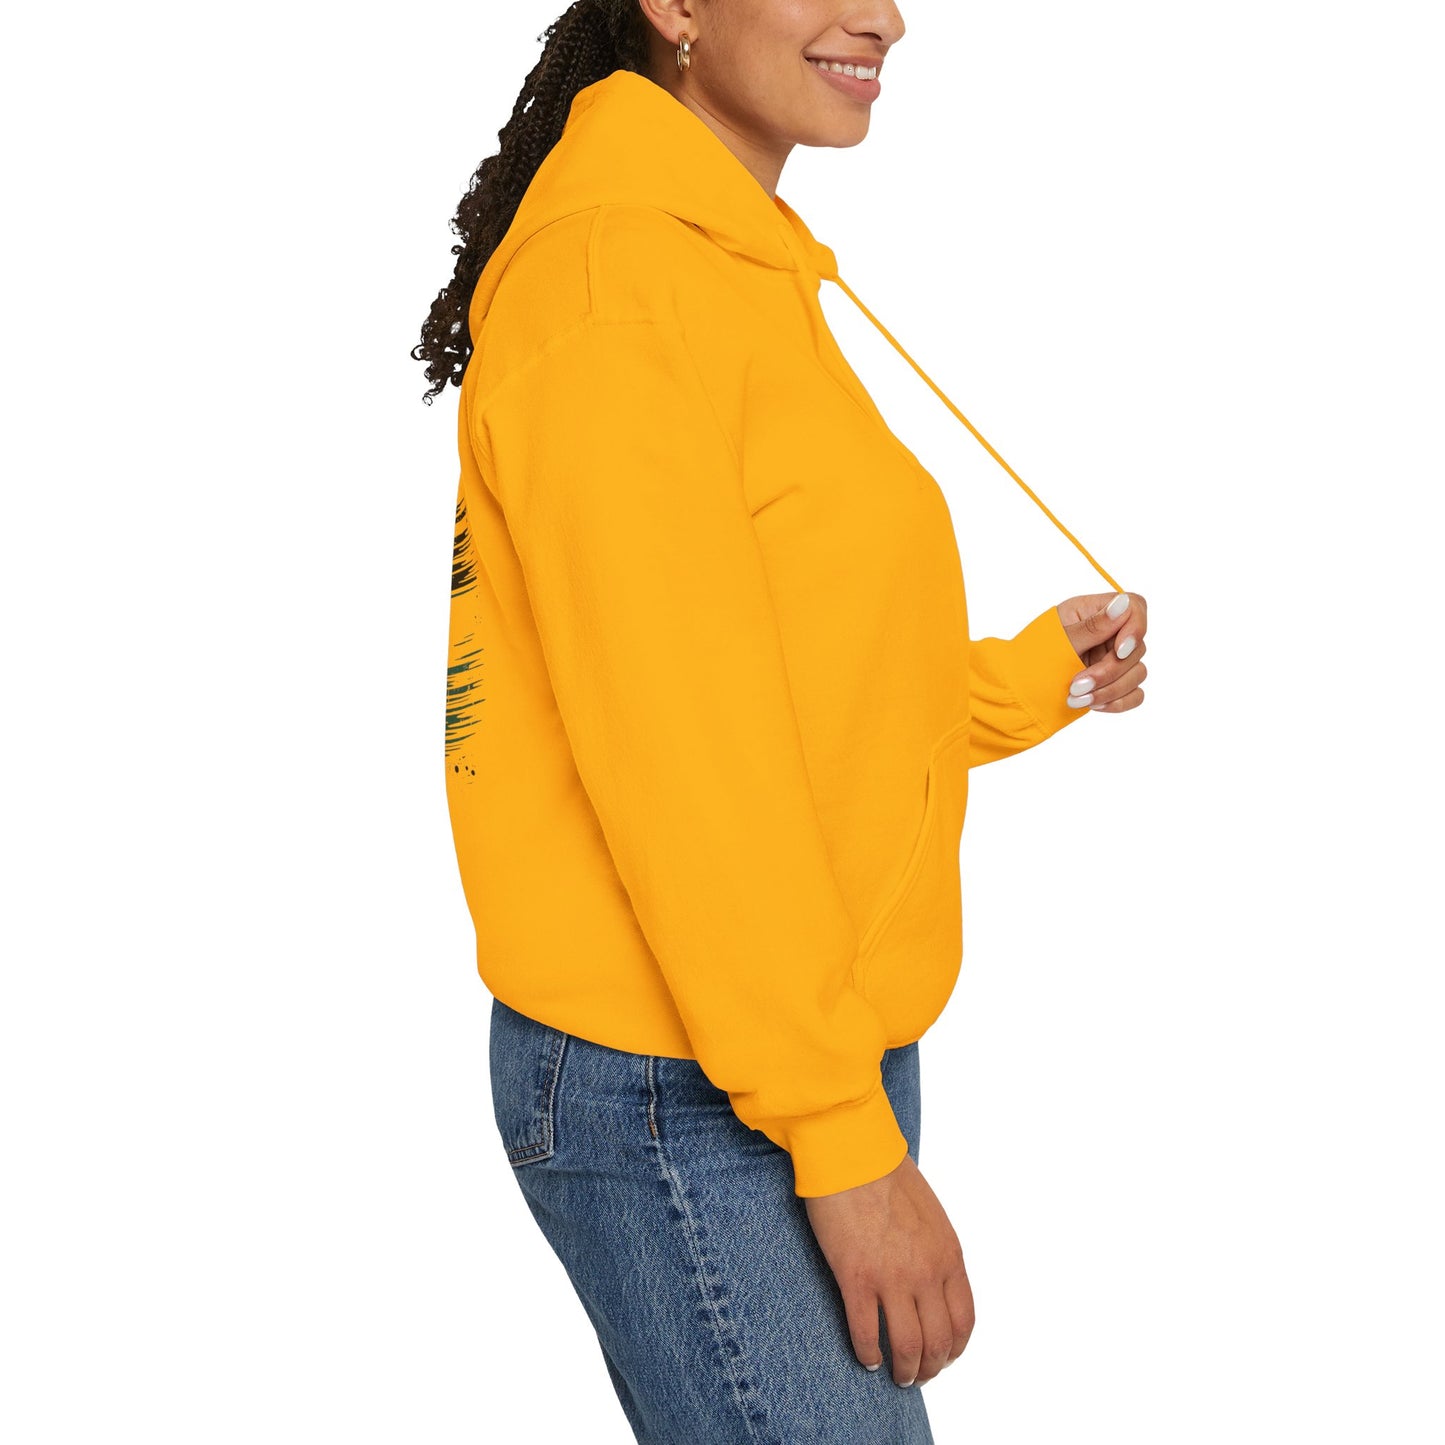 Unisex Heavy Blend FIT&FLIRT™ Hooded Sweatshirt